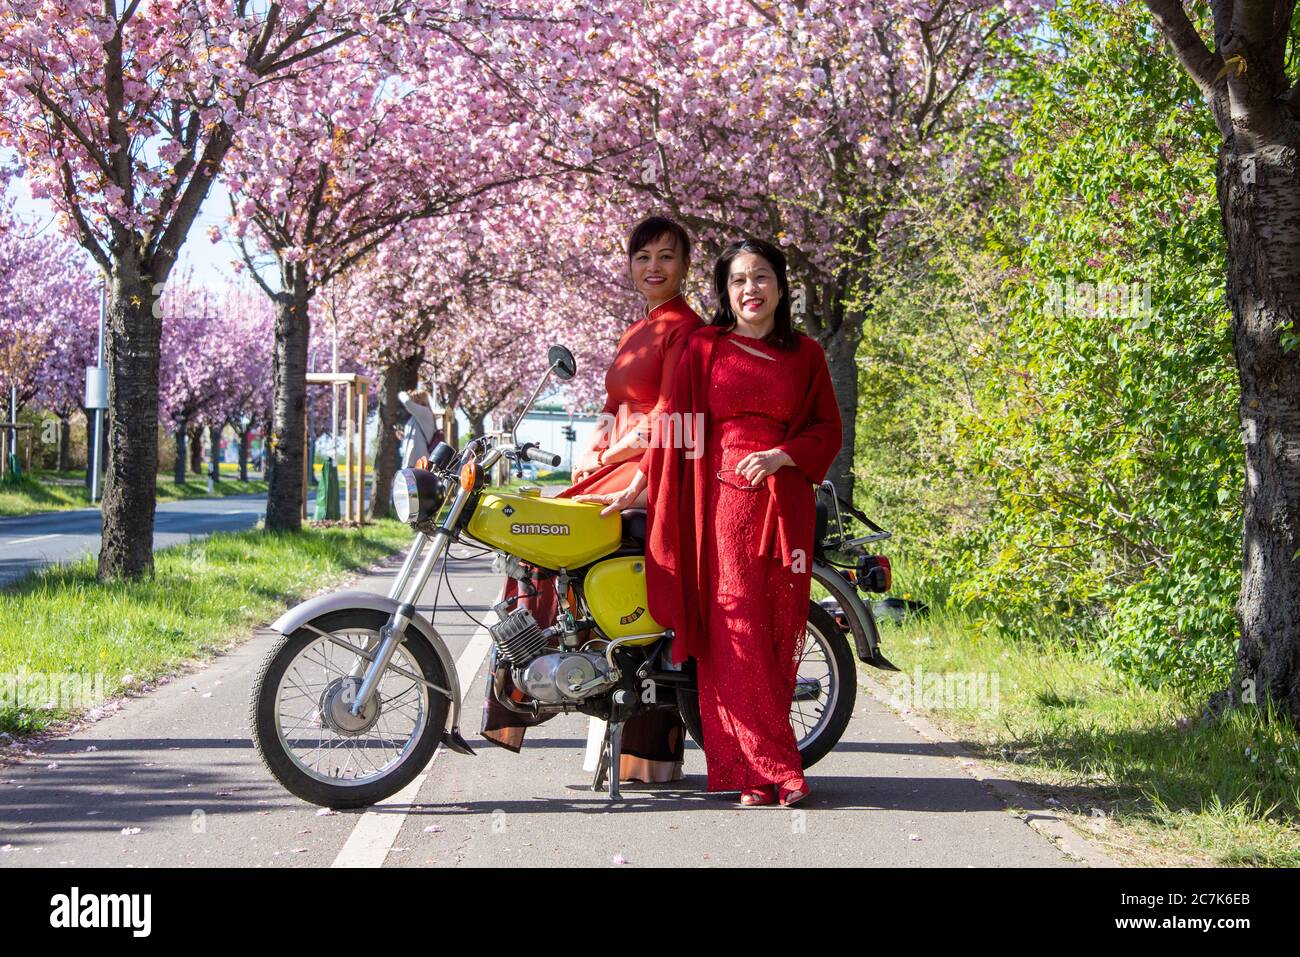 Allemagne, Saxe-Anhalt, Magdeburg, vietnamiennes, des femmes se tiennent sur un Simson dans une avenue avec des cerisiers japonais en fleurs Banque D'Images